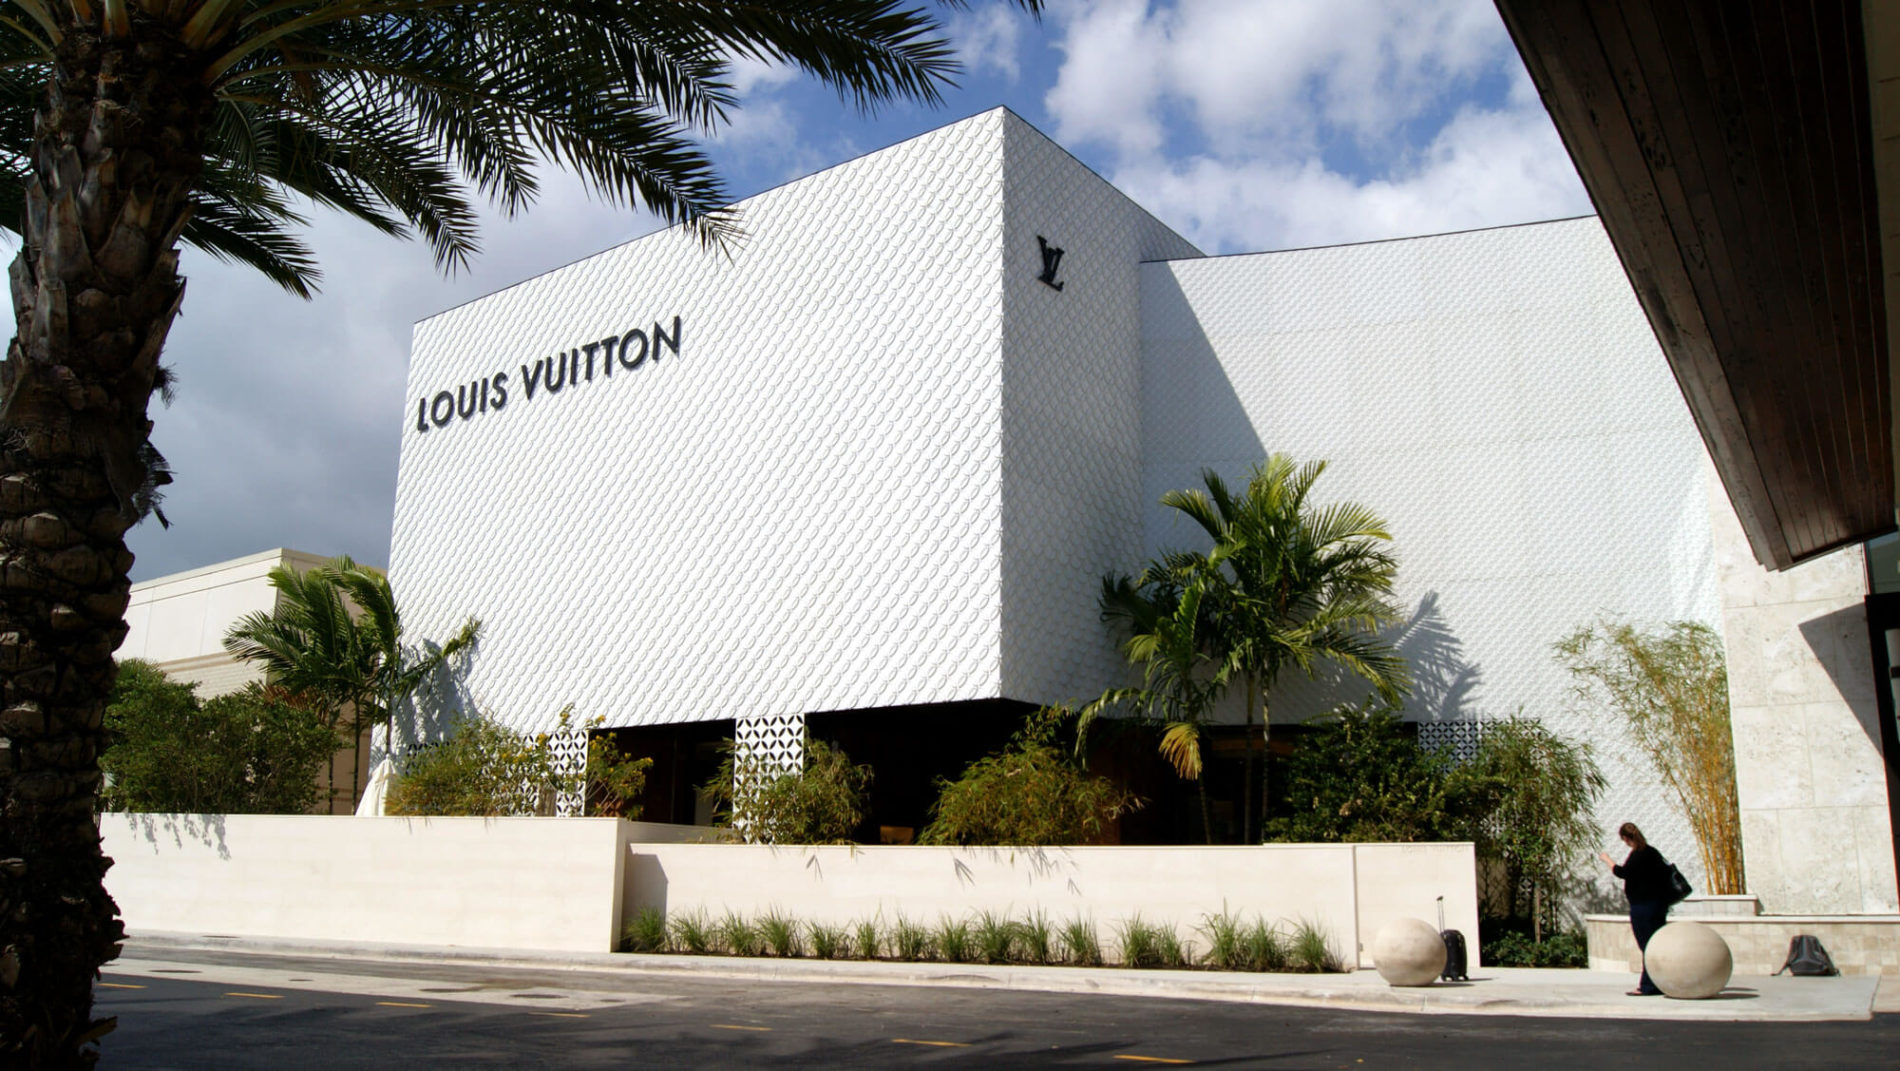 Louis Vuitton Sequin Holster Vest